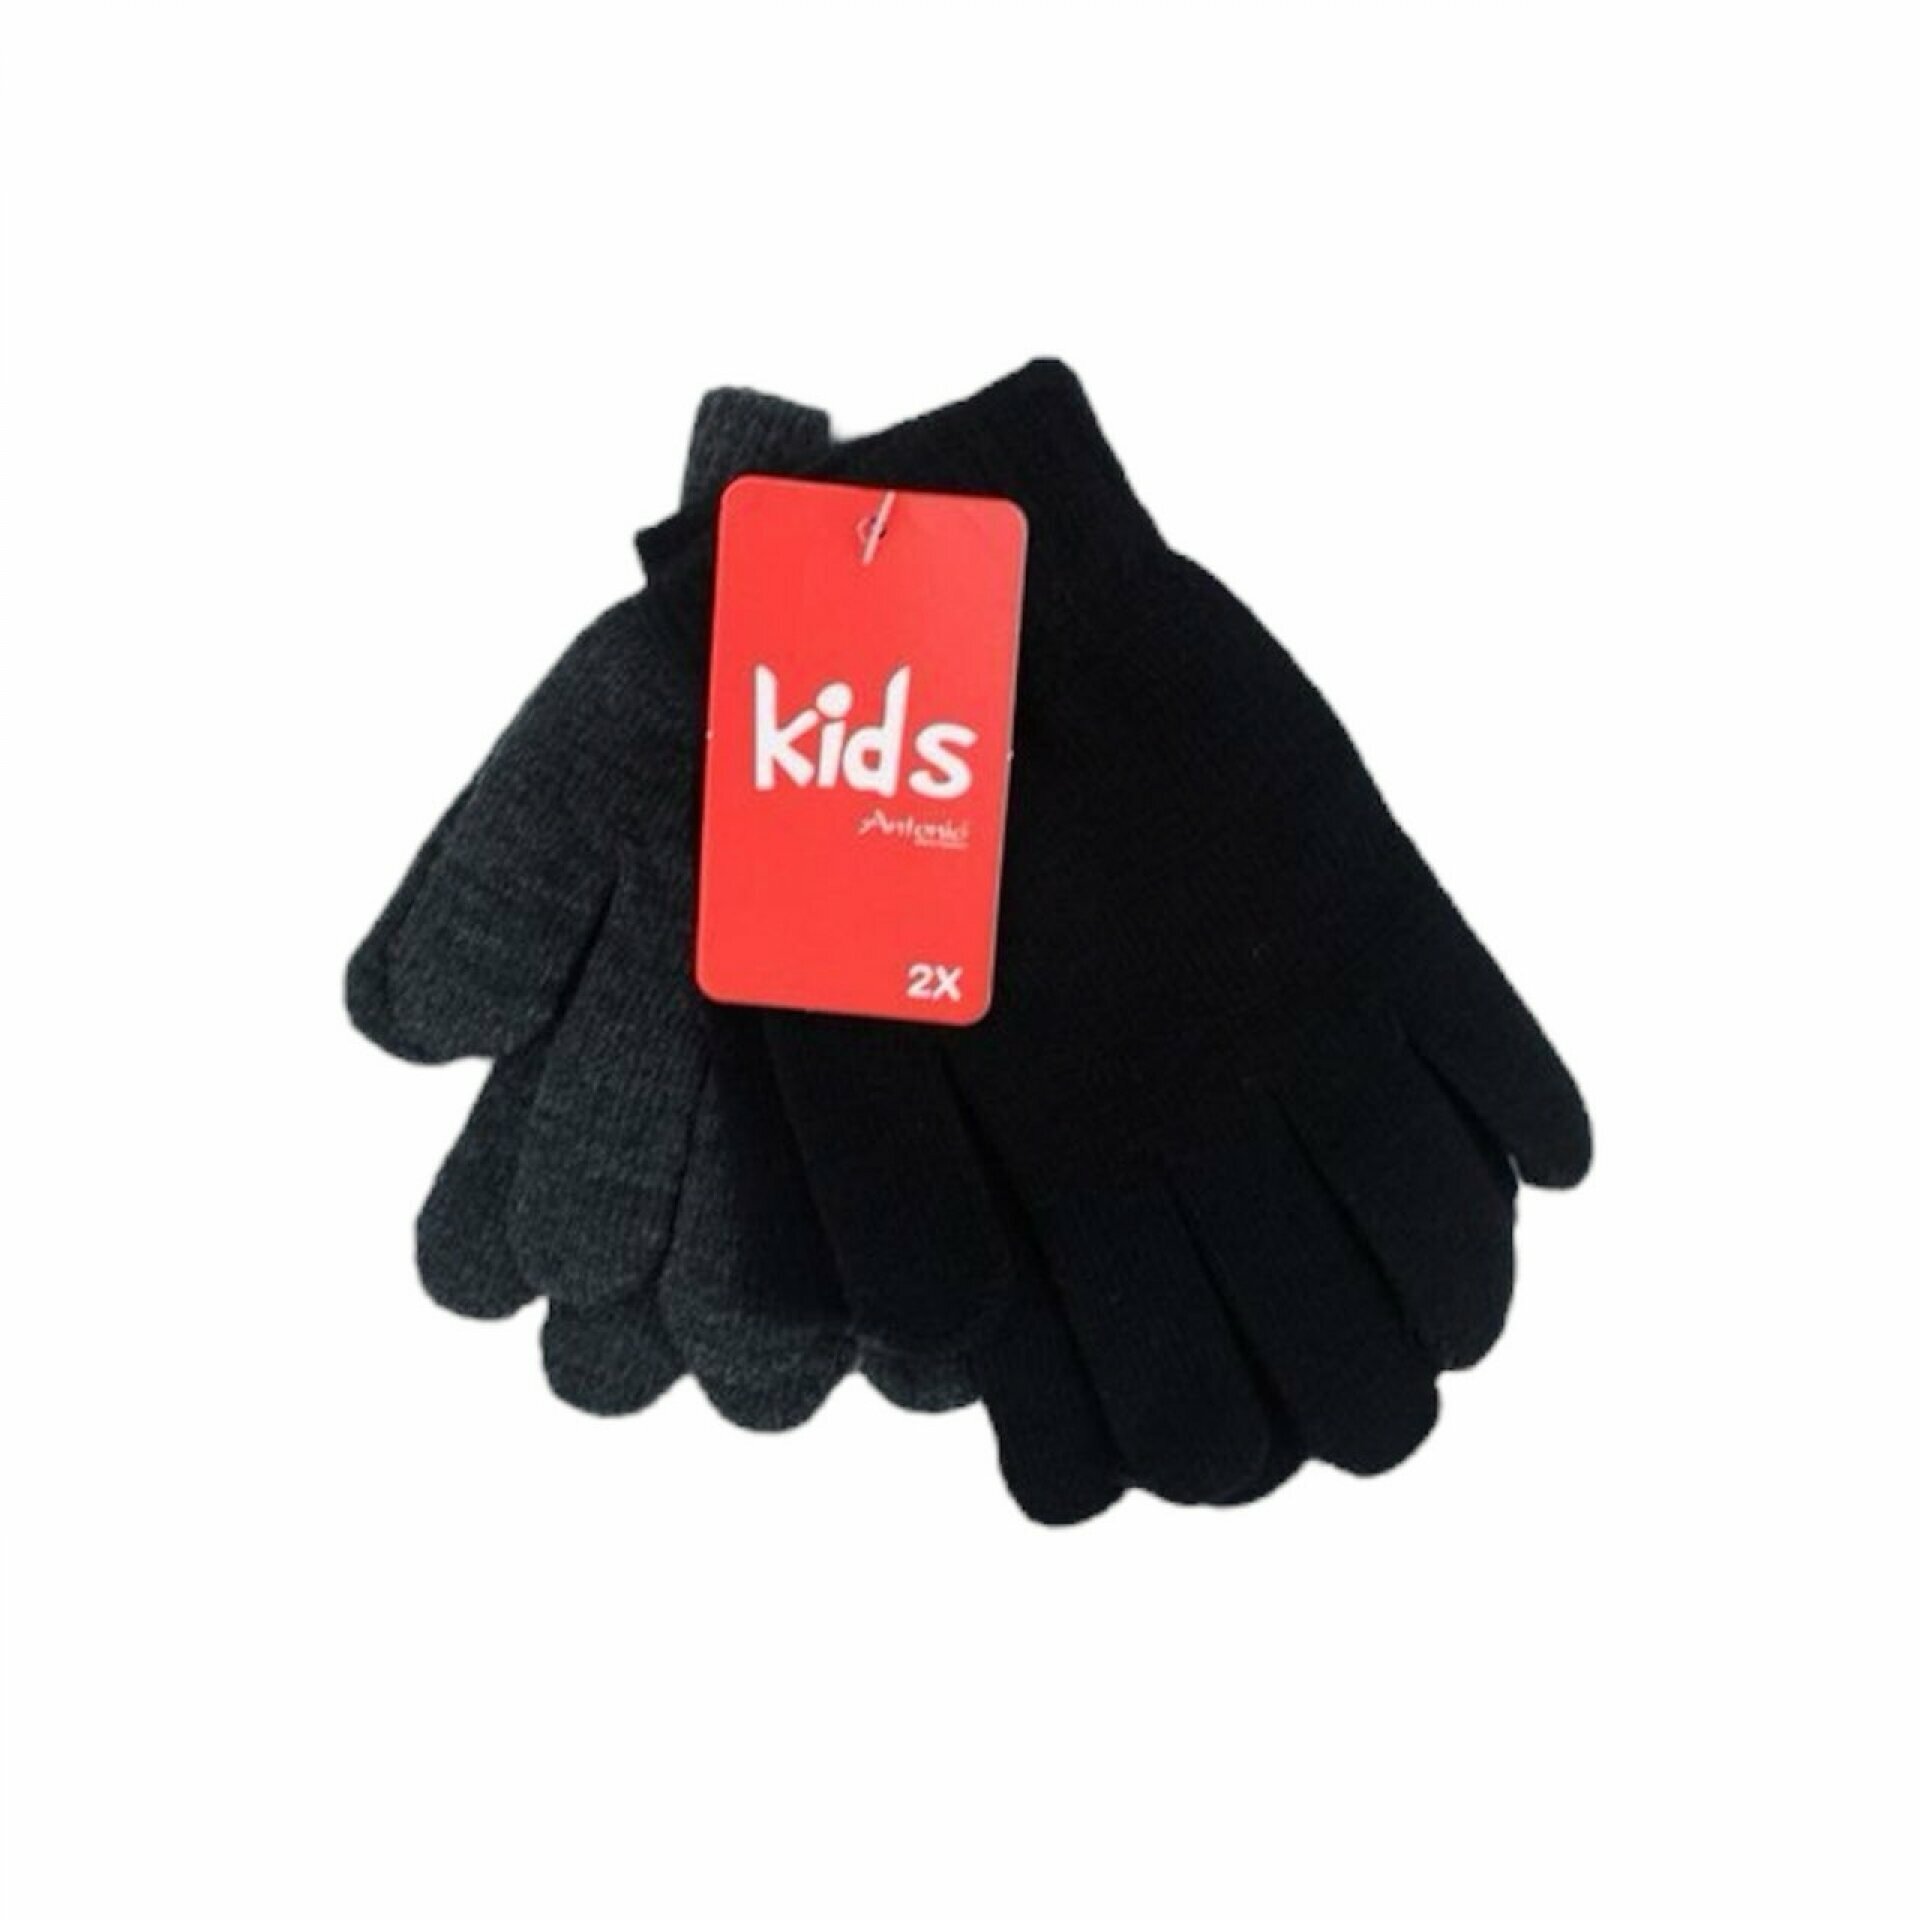 2er Pack Kinder Handschuhe | Doppelpack mit 2 verschiedenen Farben [Schwarz/Dunkelgrau]